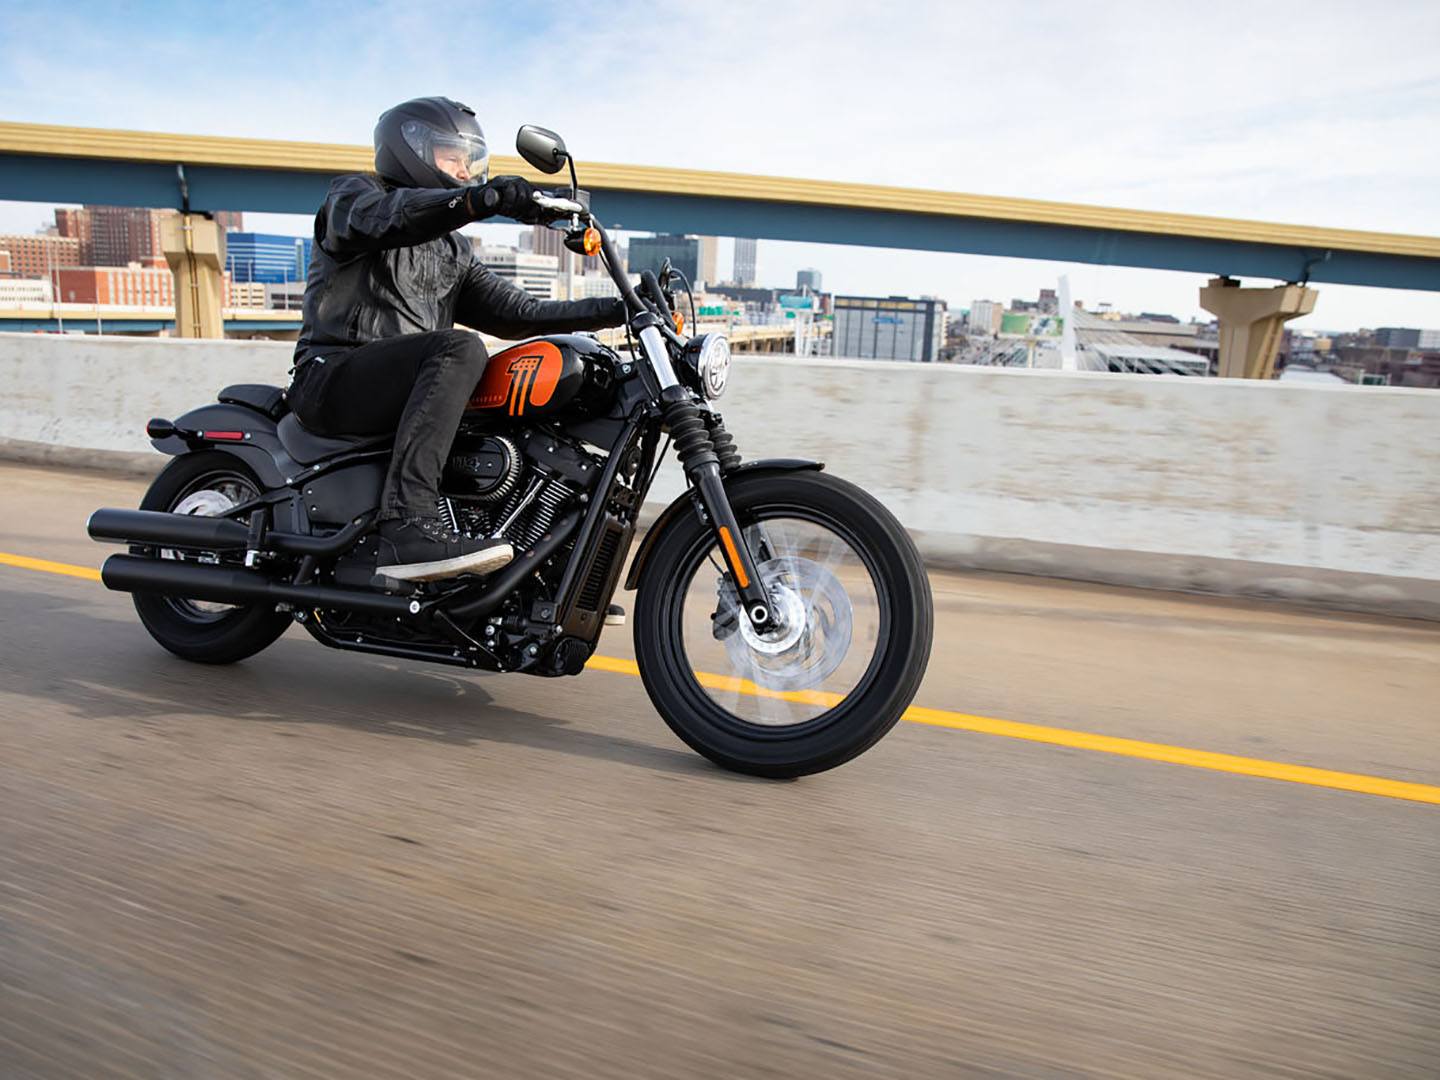 2021 Harley-Davidson Street Bob® 114 in Sandy, Utah - Photo 10